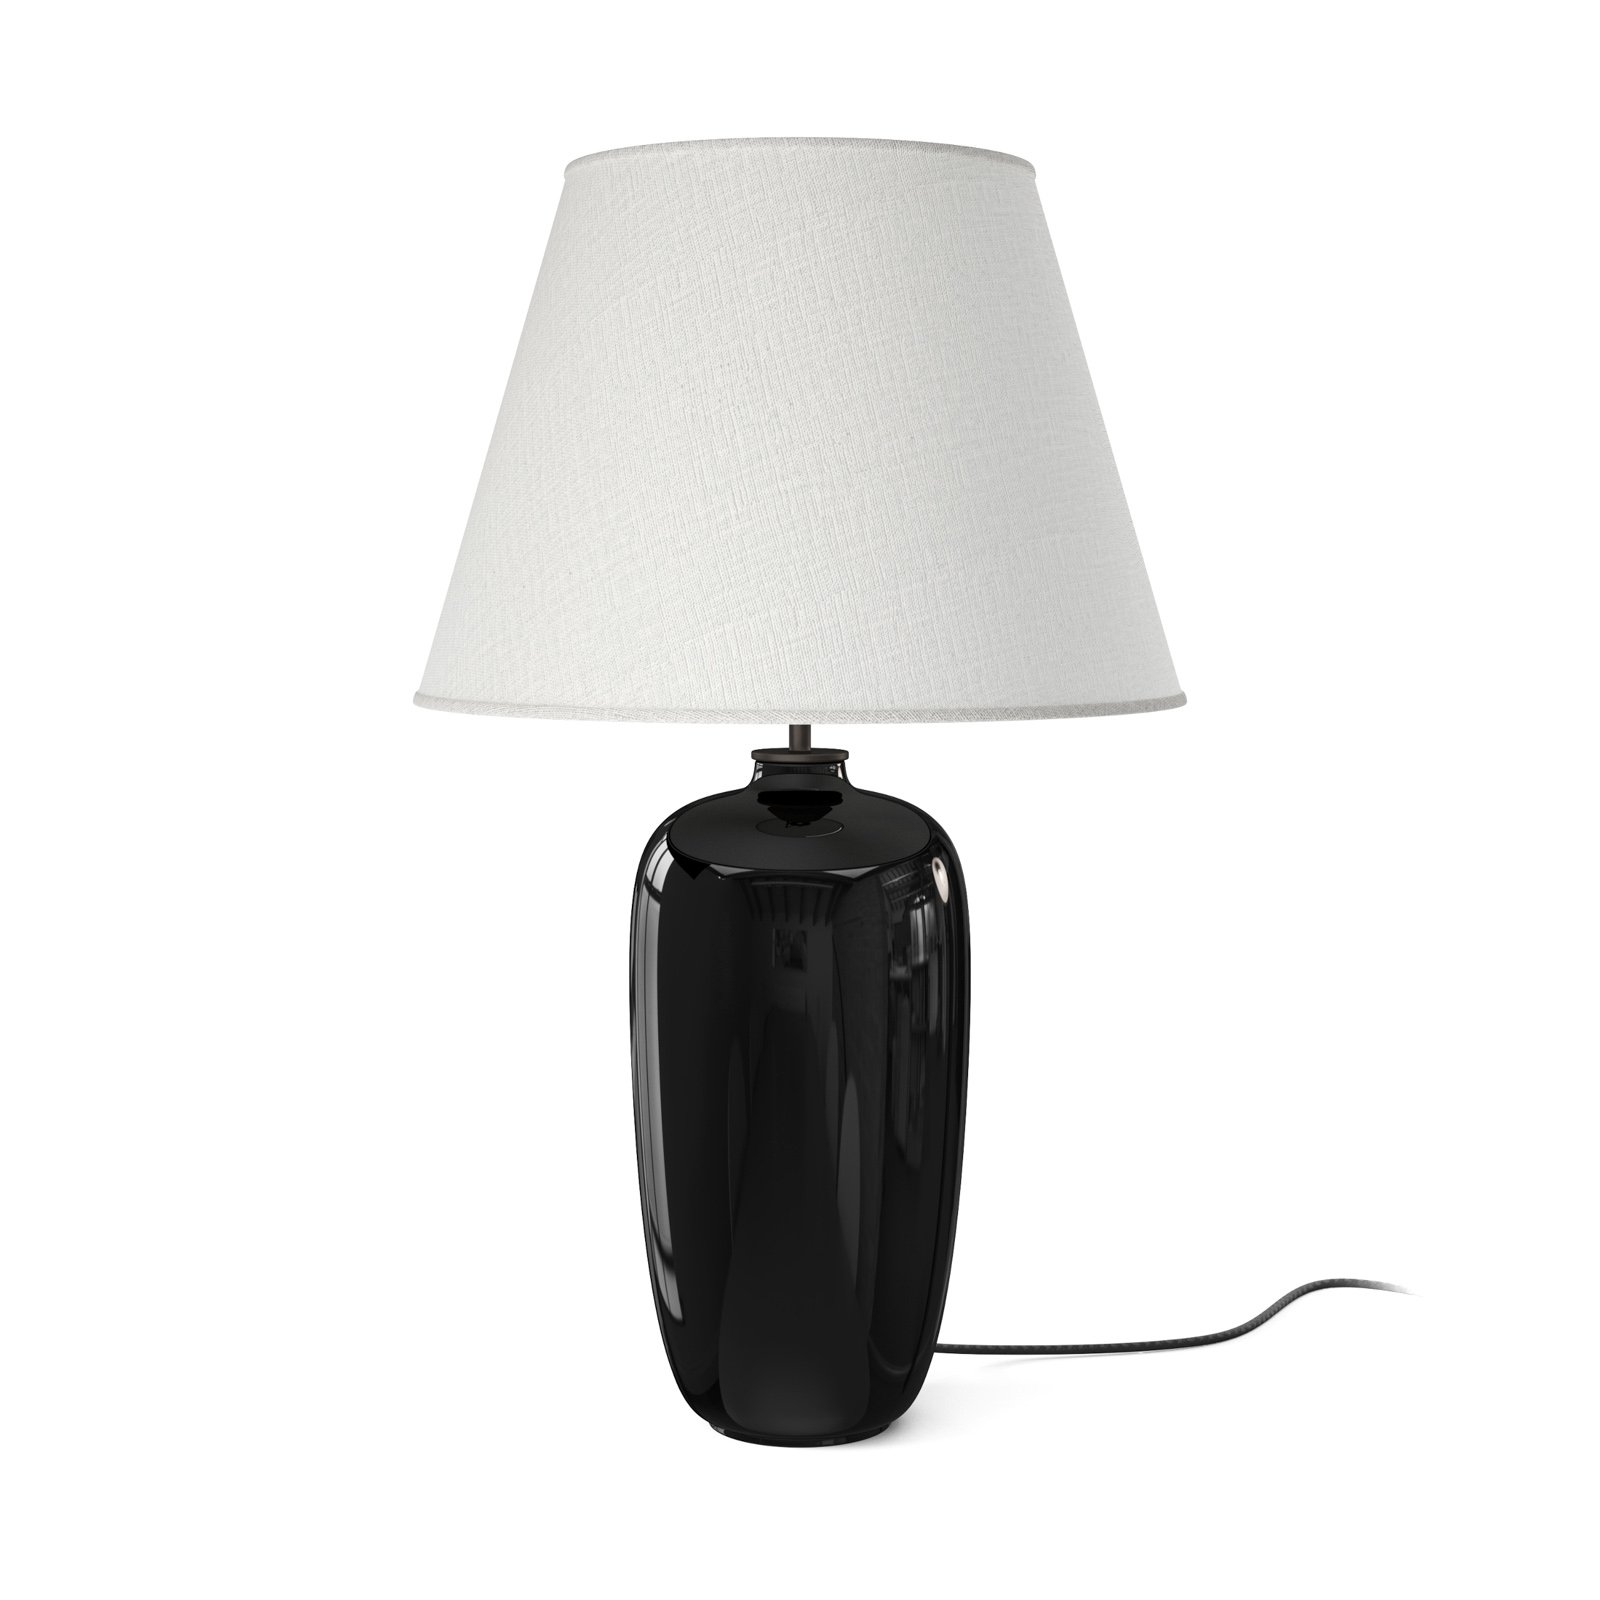 Audo Torso lampe à poser, noire/blanche, 57 cm